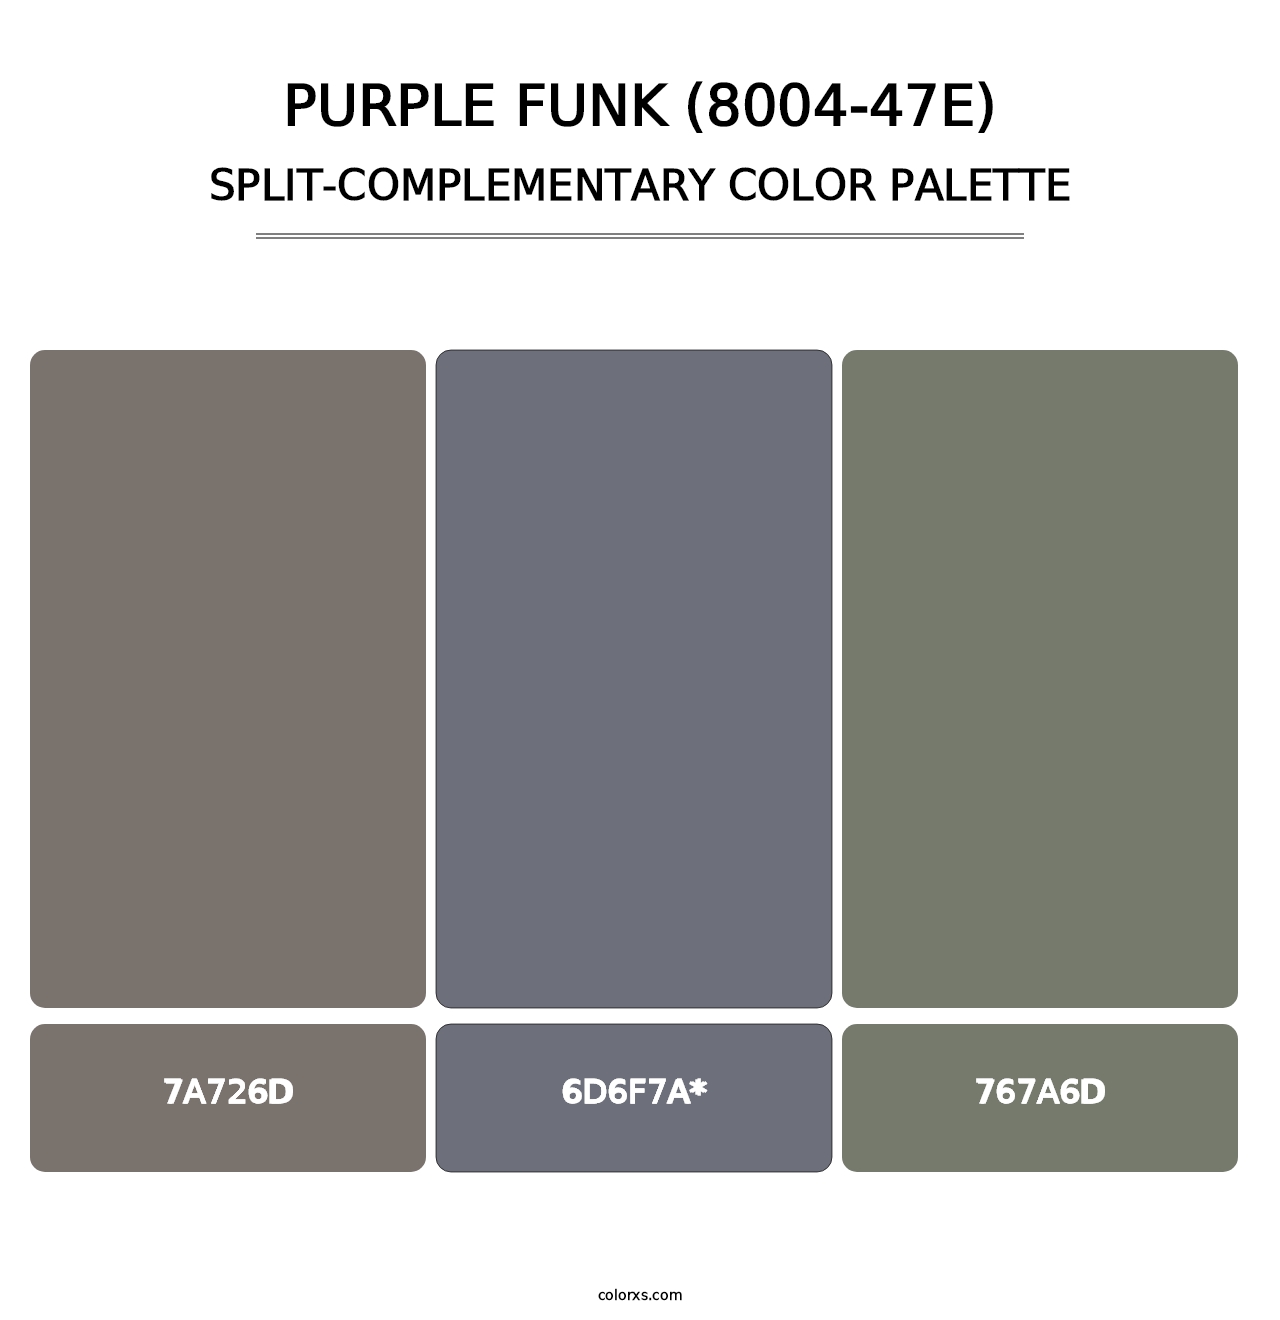 Purple Funk (8004-47E) - Split-Complementary Color Palette